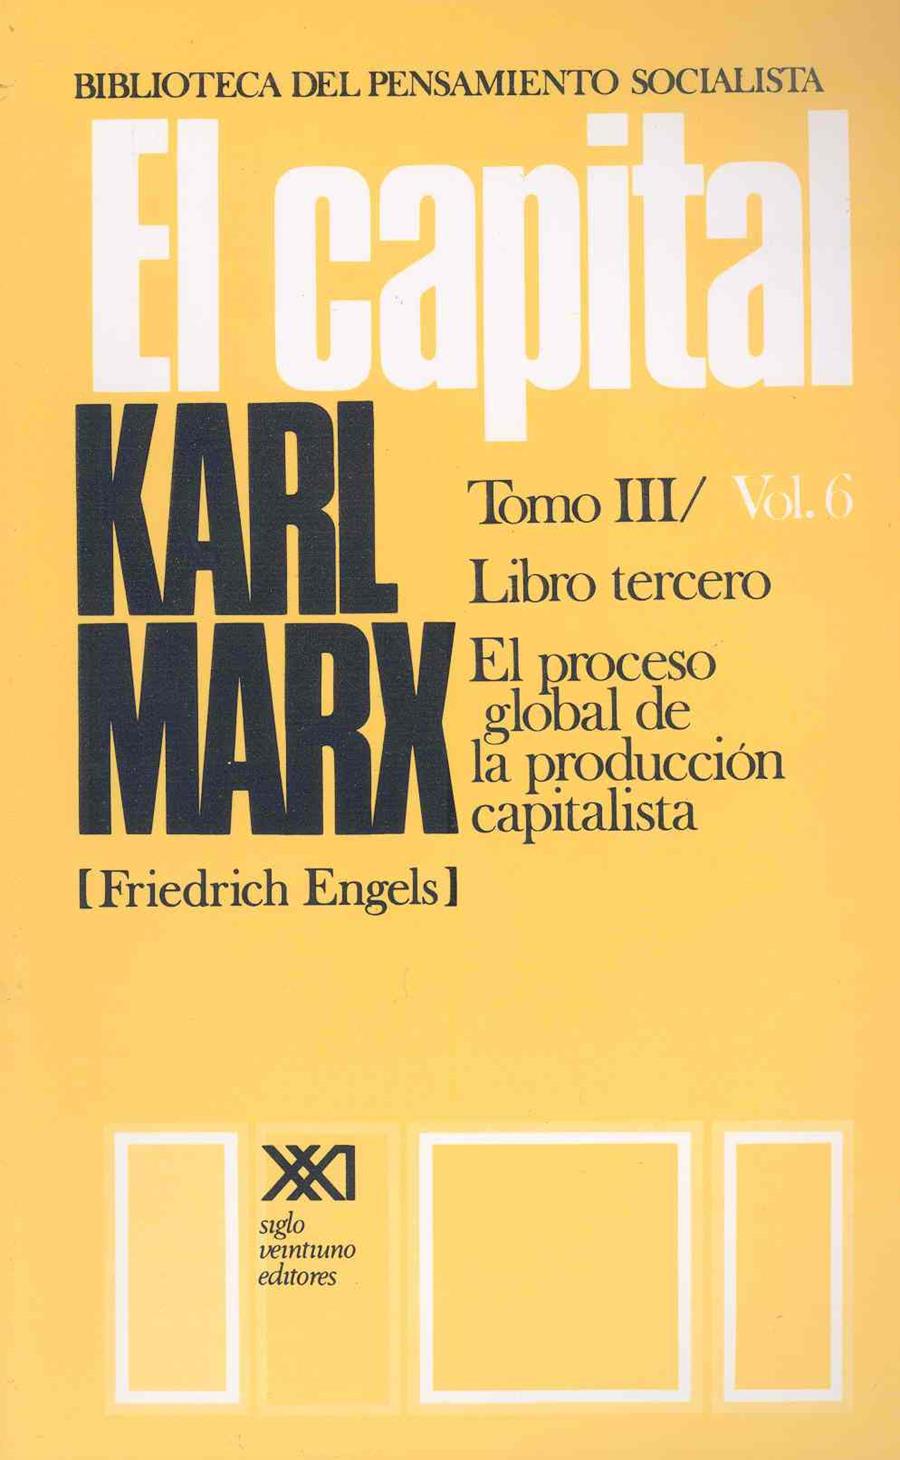 El Capital, vol. 6 | Marx, Karl | Cooperativa autogestionària